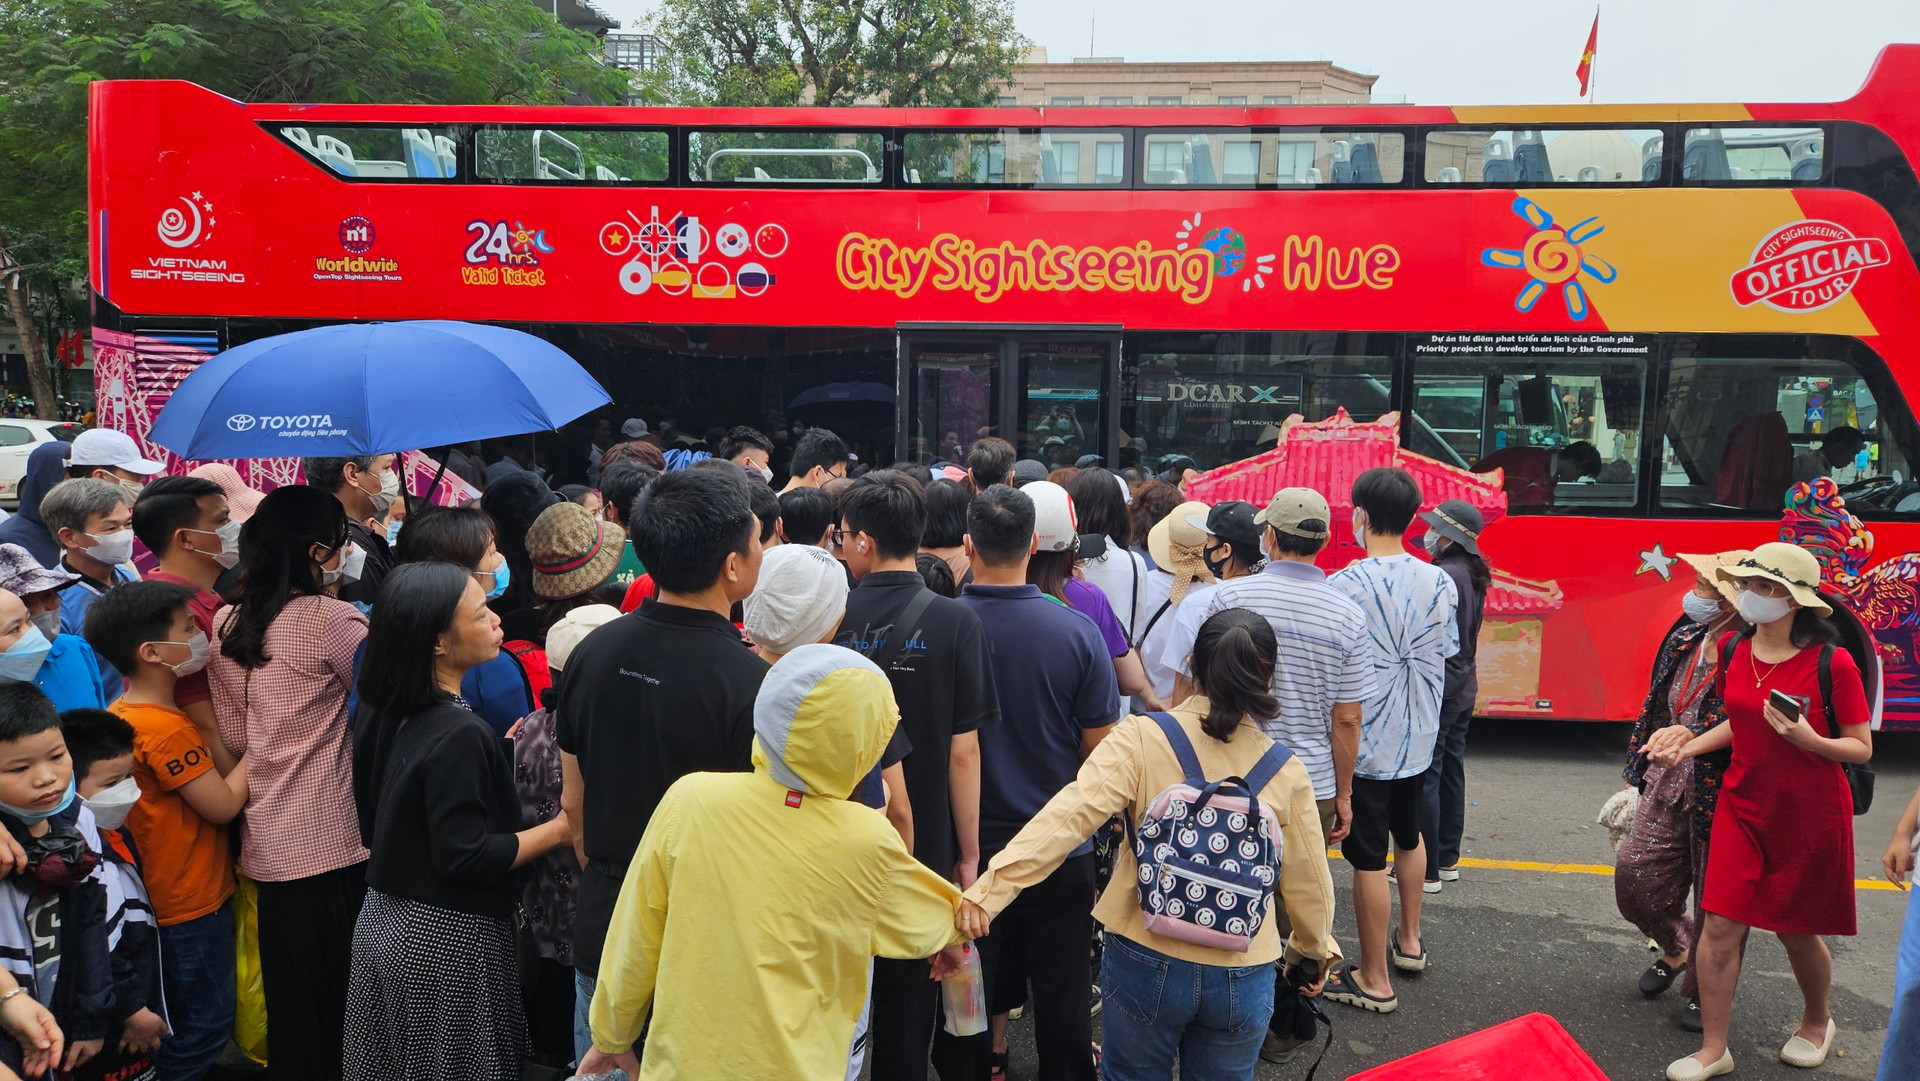 Xếp hàng cả tiếng đồng hồ chờ đi xe bus 2 tầng ở Hà Nội - Ảnh 7.